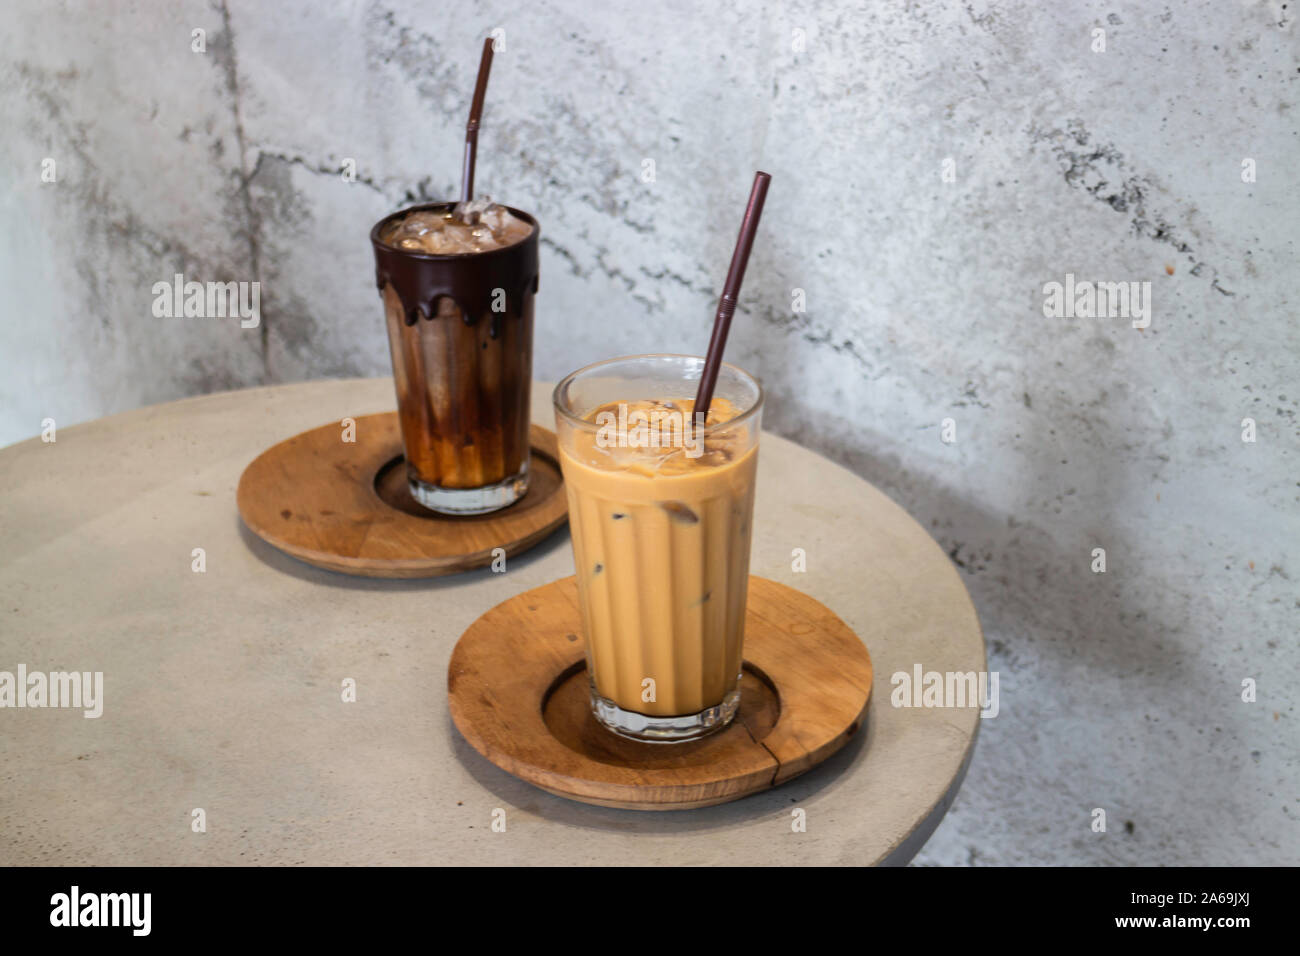 https://c8.alamy.com/comp/2A69JXJ/iced-milk-coffee-in-glasses-with-straws-stock-photo-2A69JXJ.jpg